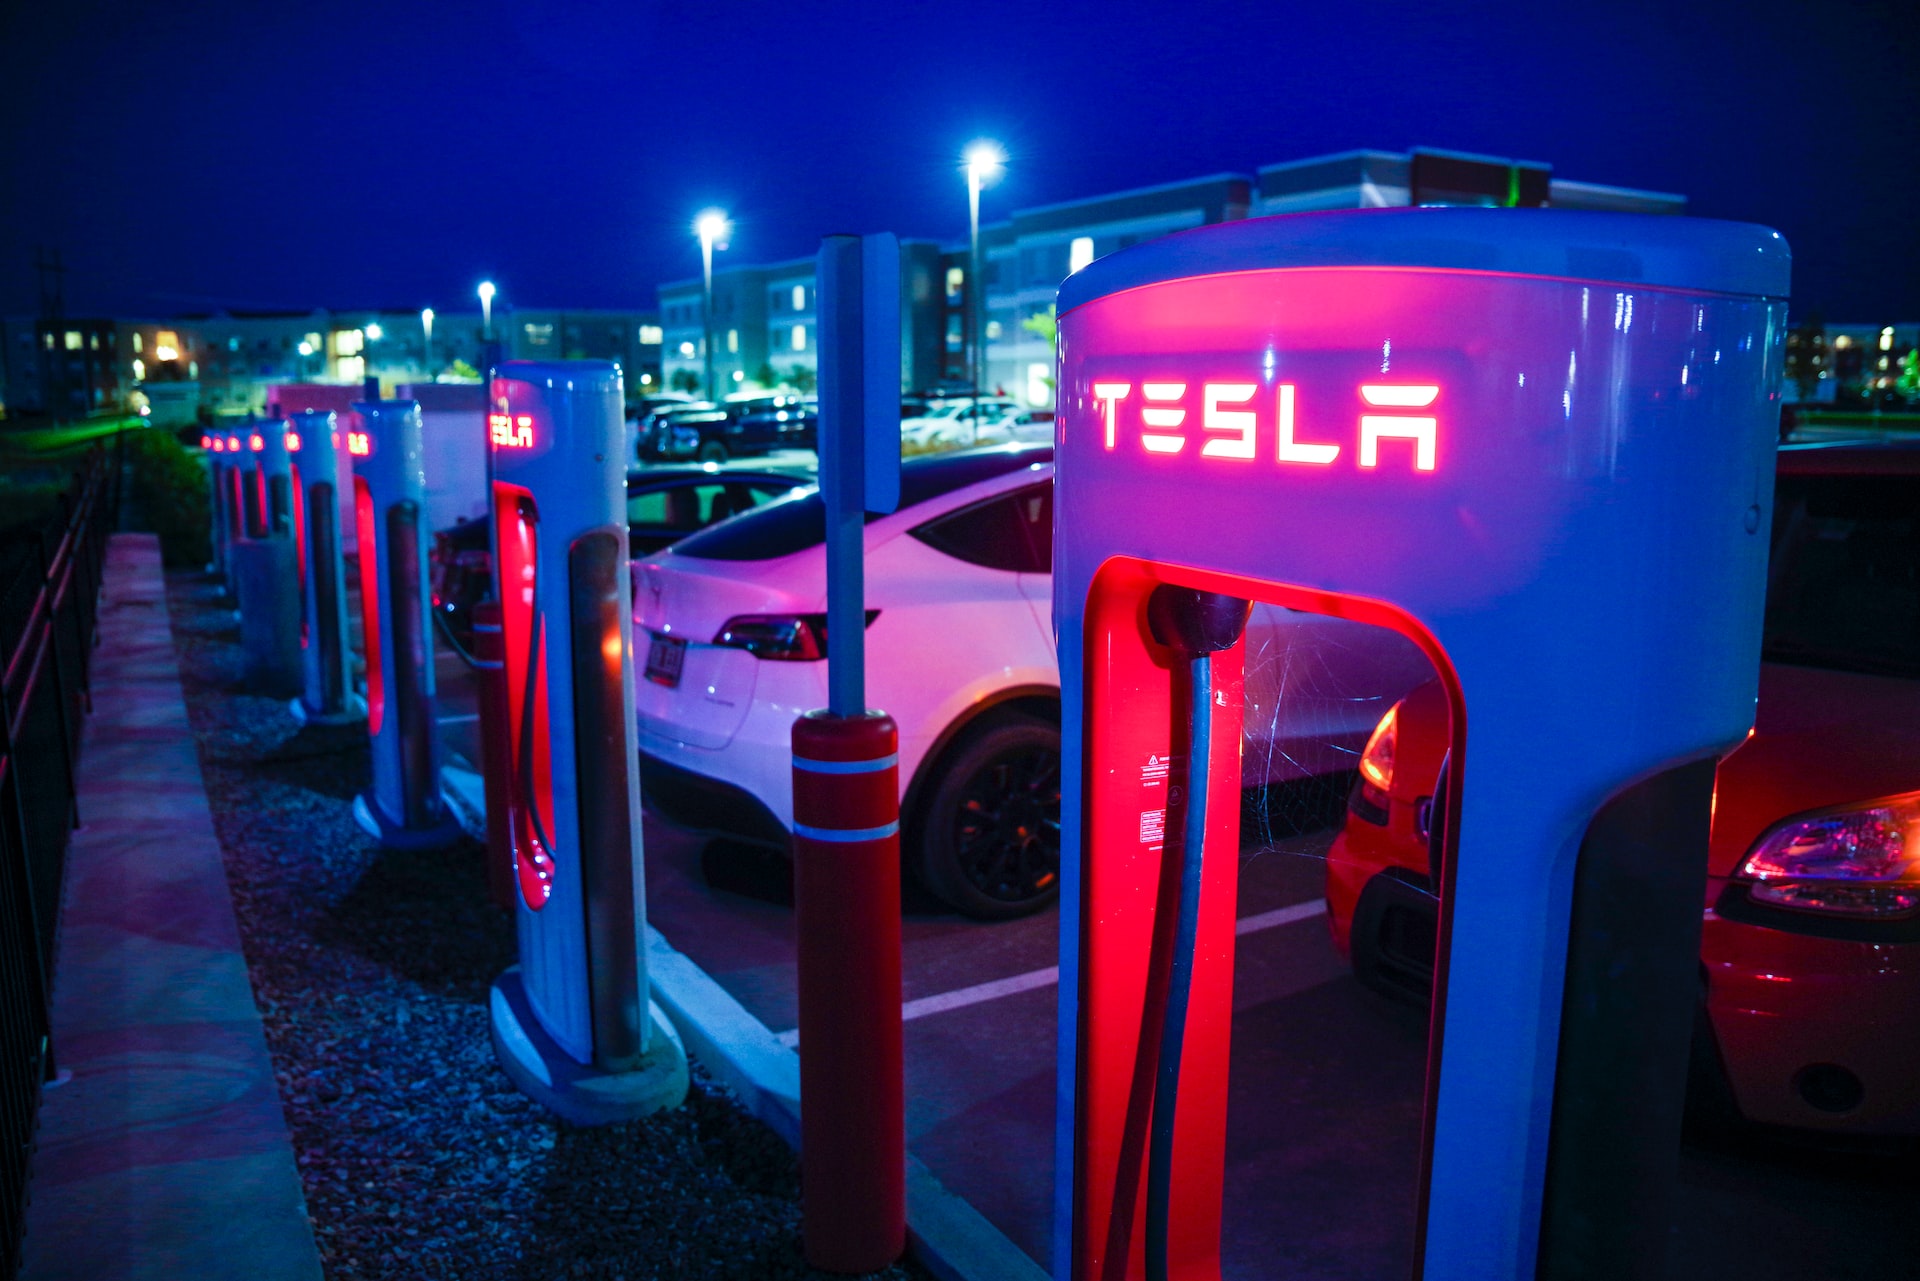 Tesla charging station at night.